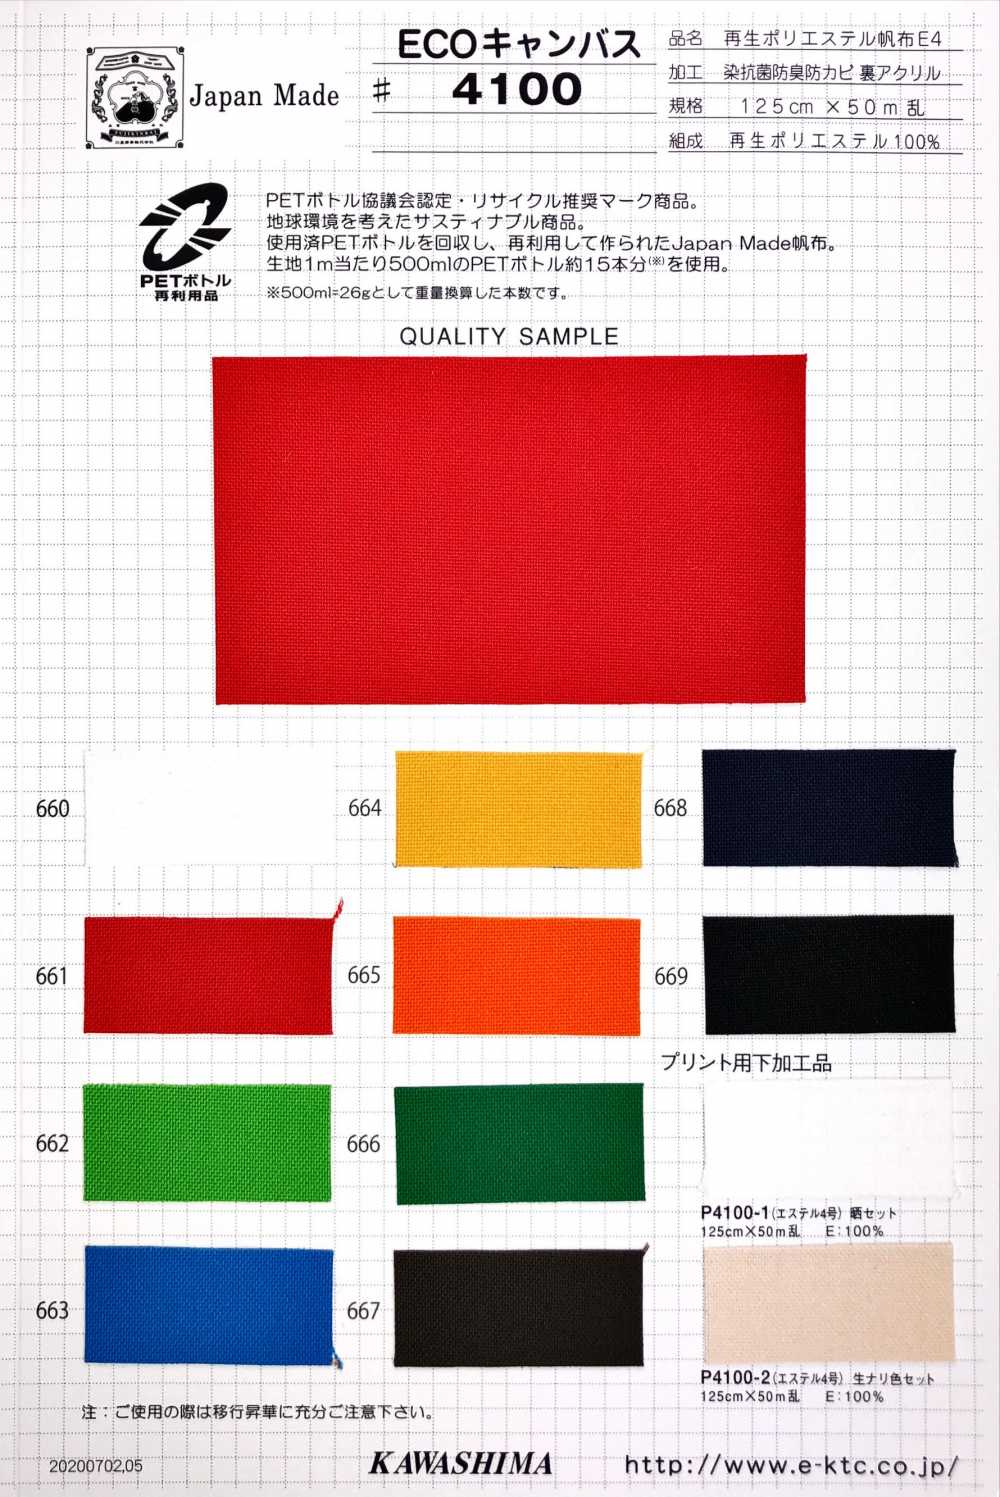 P4100 Fujikinbai Poliéster Reciclado No. 4 Lona P Parte Inferior[Fabrica Textil] Ciruela Dorada Fuji